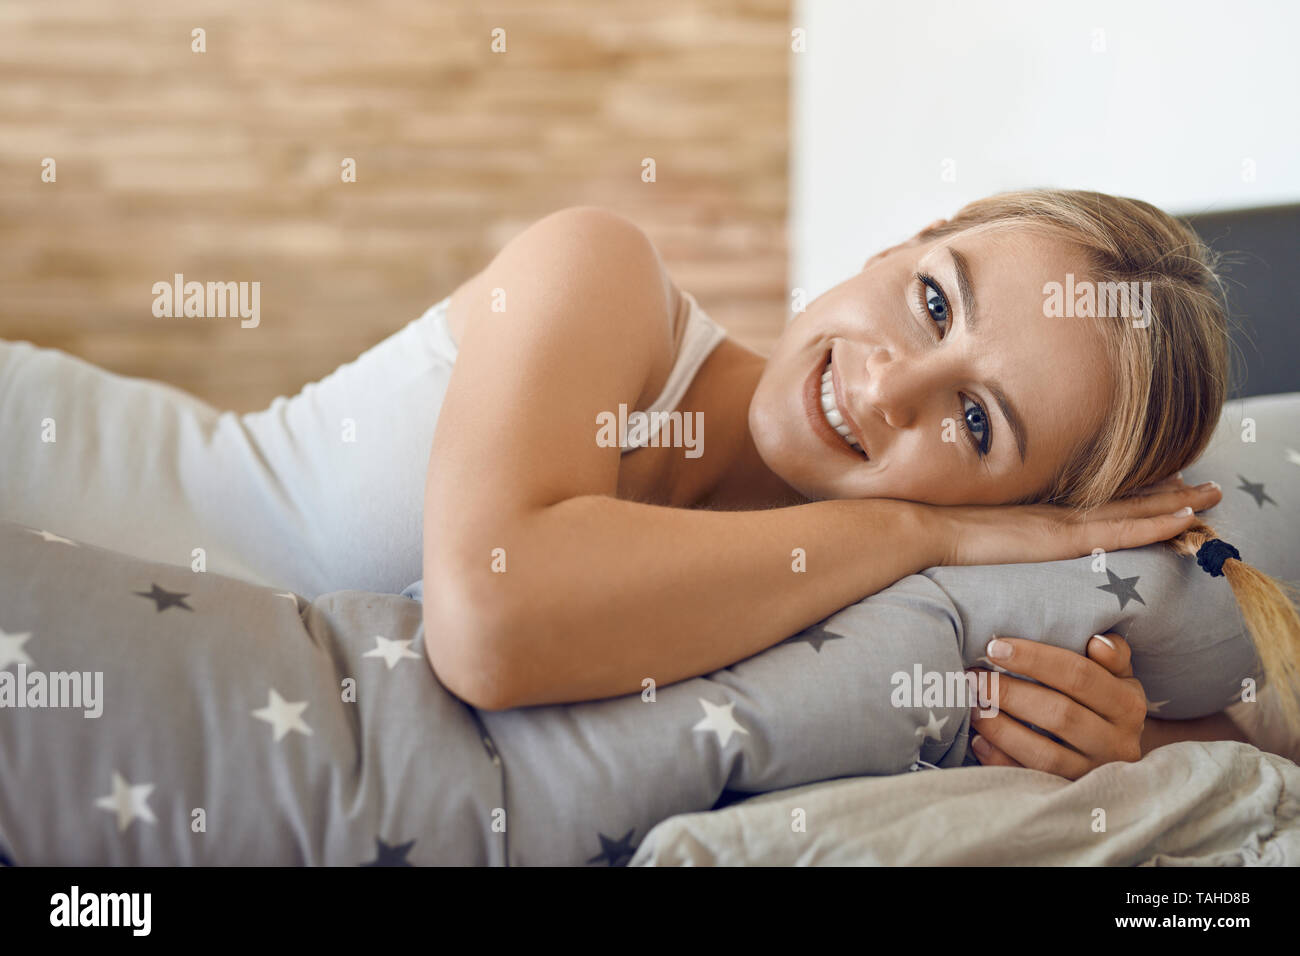 Glückliche gesunde junge schwangere Frau ruht auf einem Bett mit einem speziellen Kissen als Unterstützung in die Kamera schaut mit einem reizenden Lächeln Stockfoto